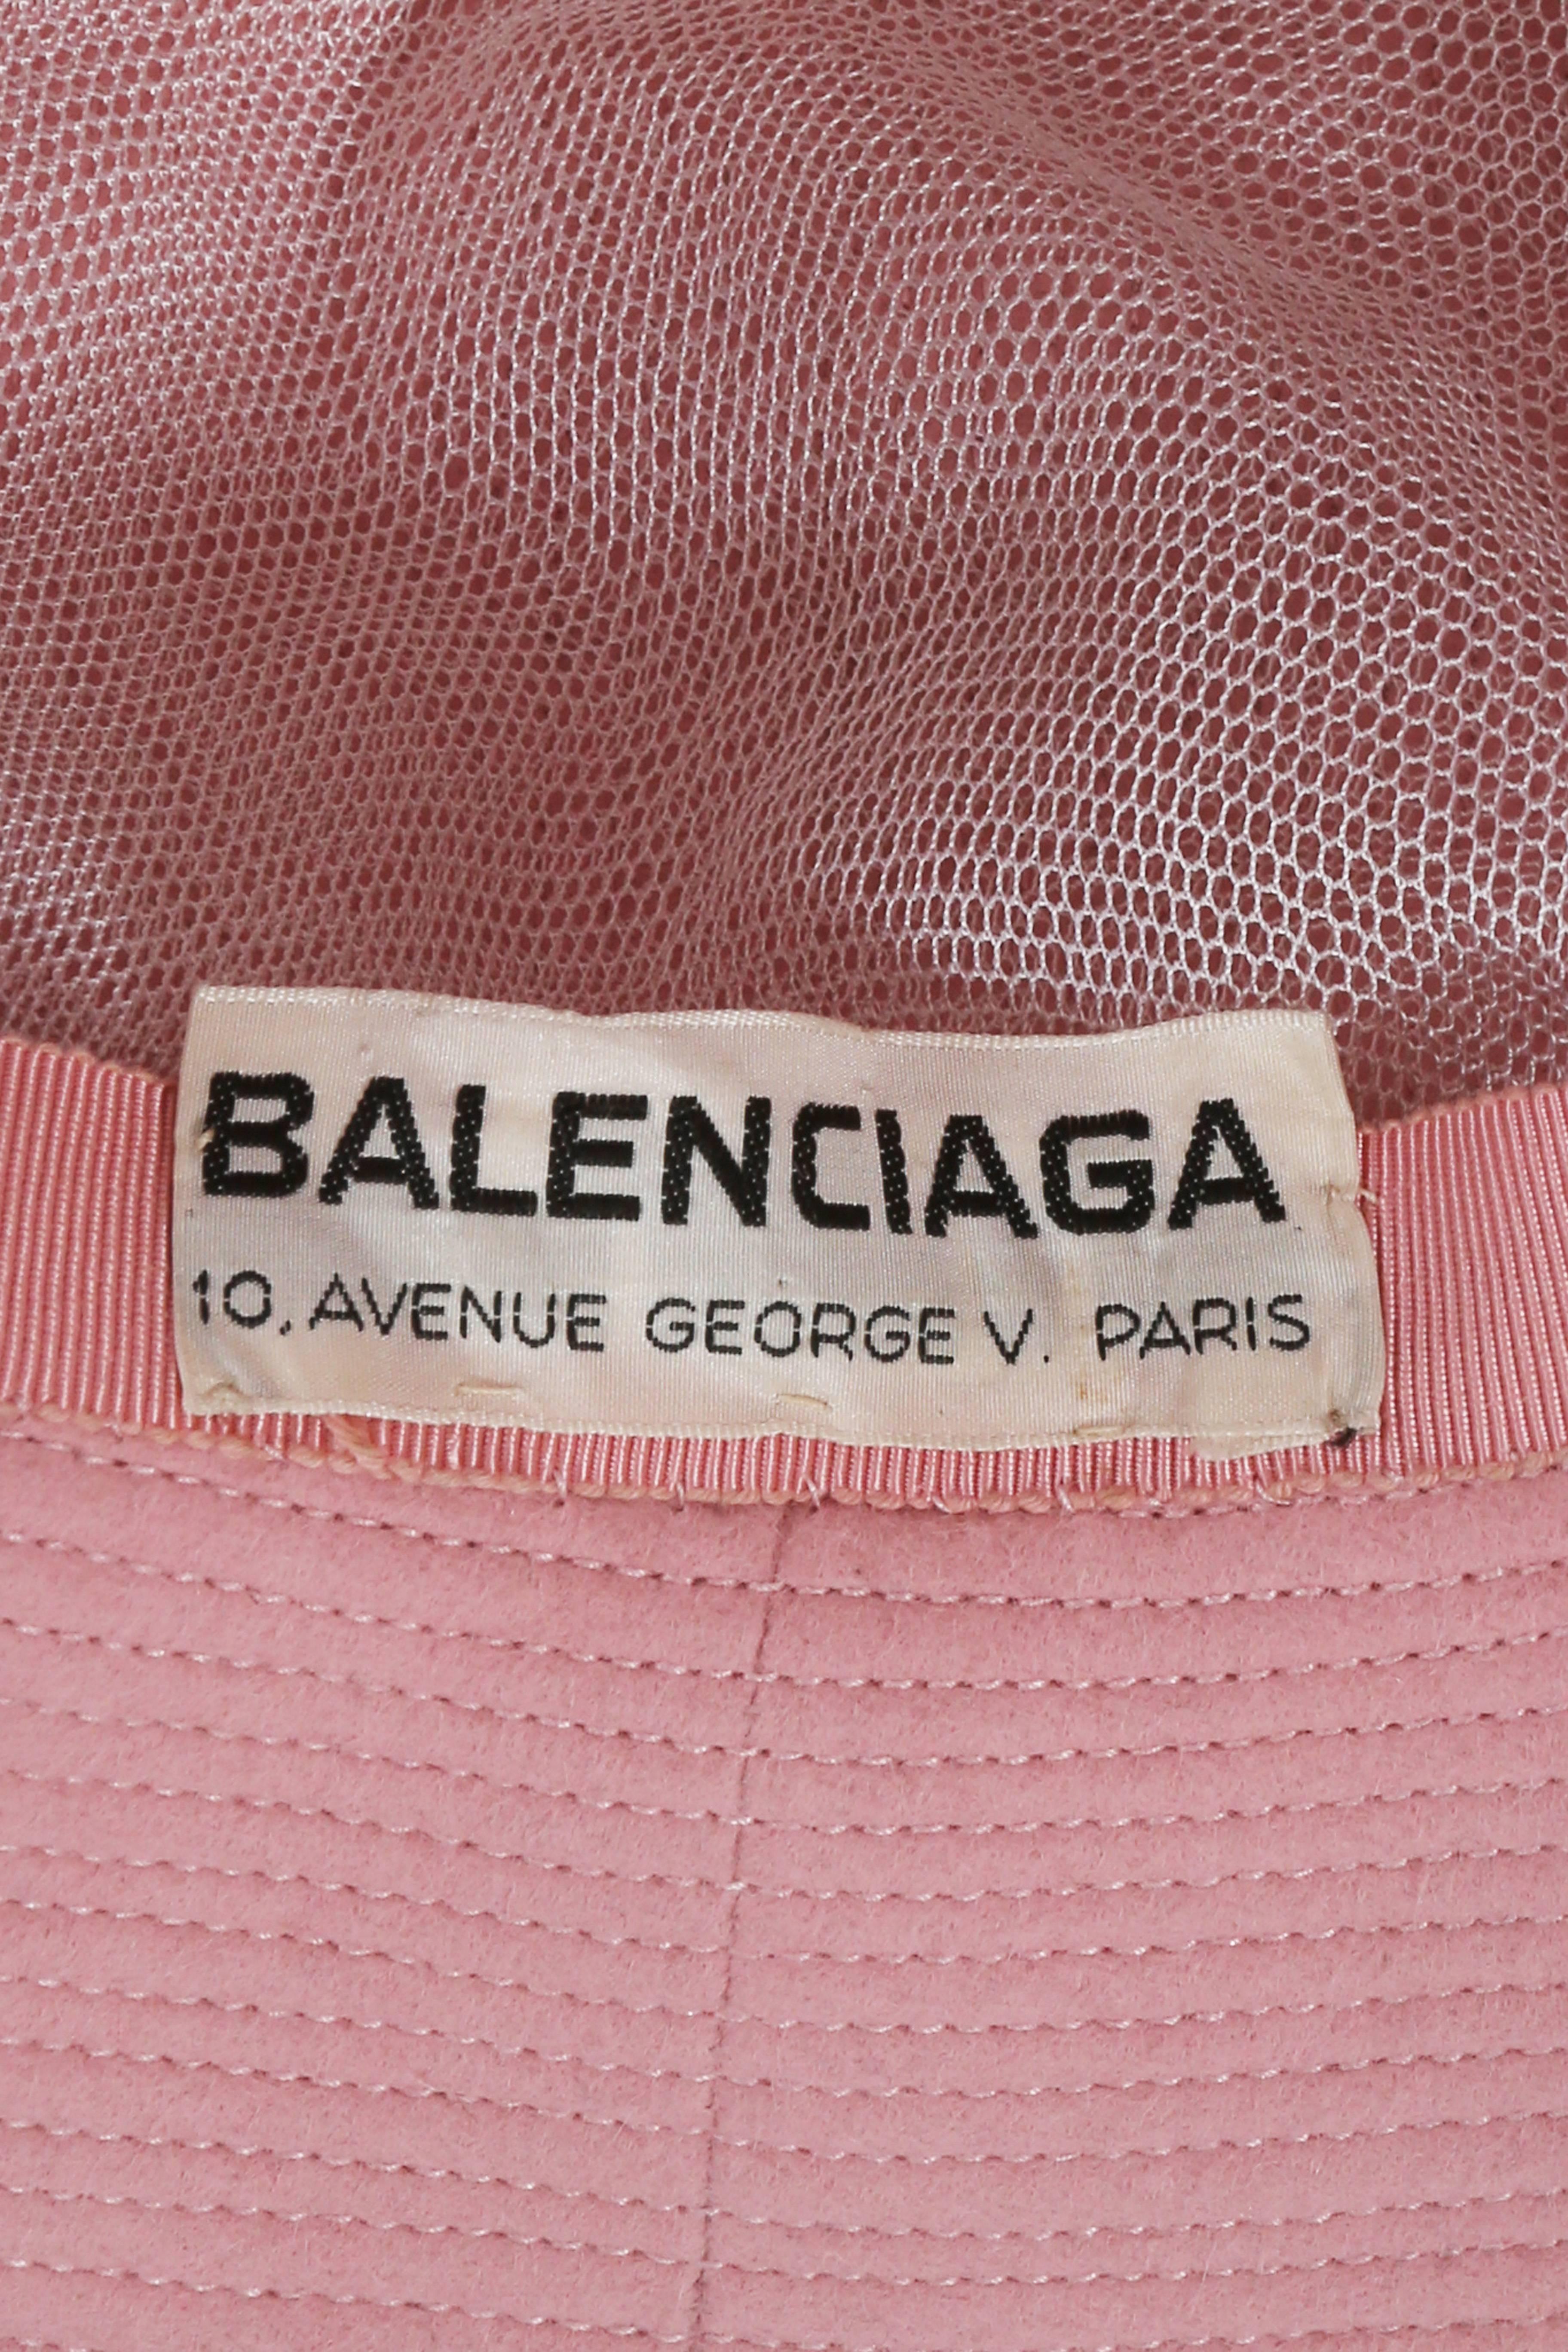 Balenciaga Haute Couture baby pink bowler hat, circa 1961 3